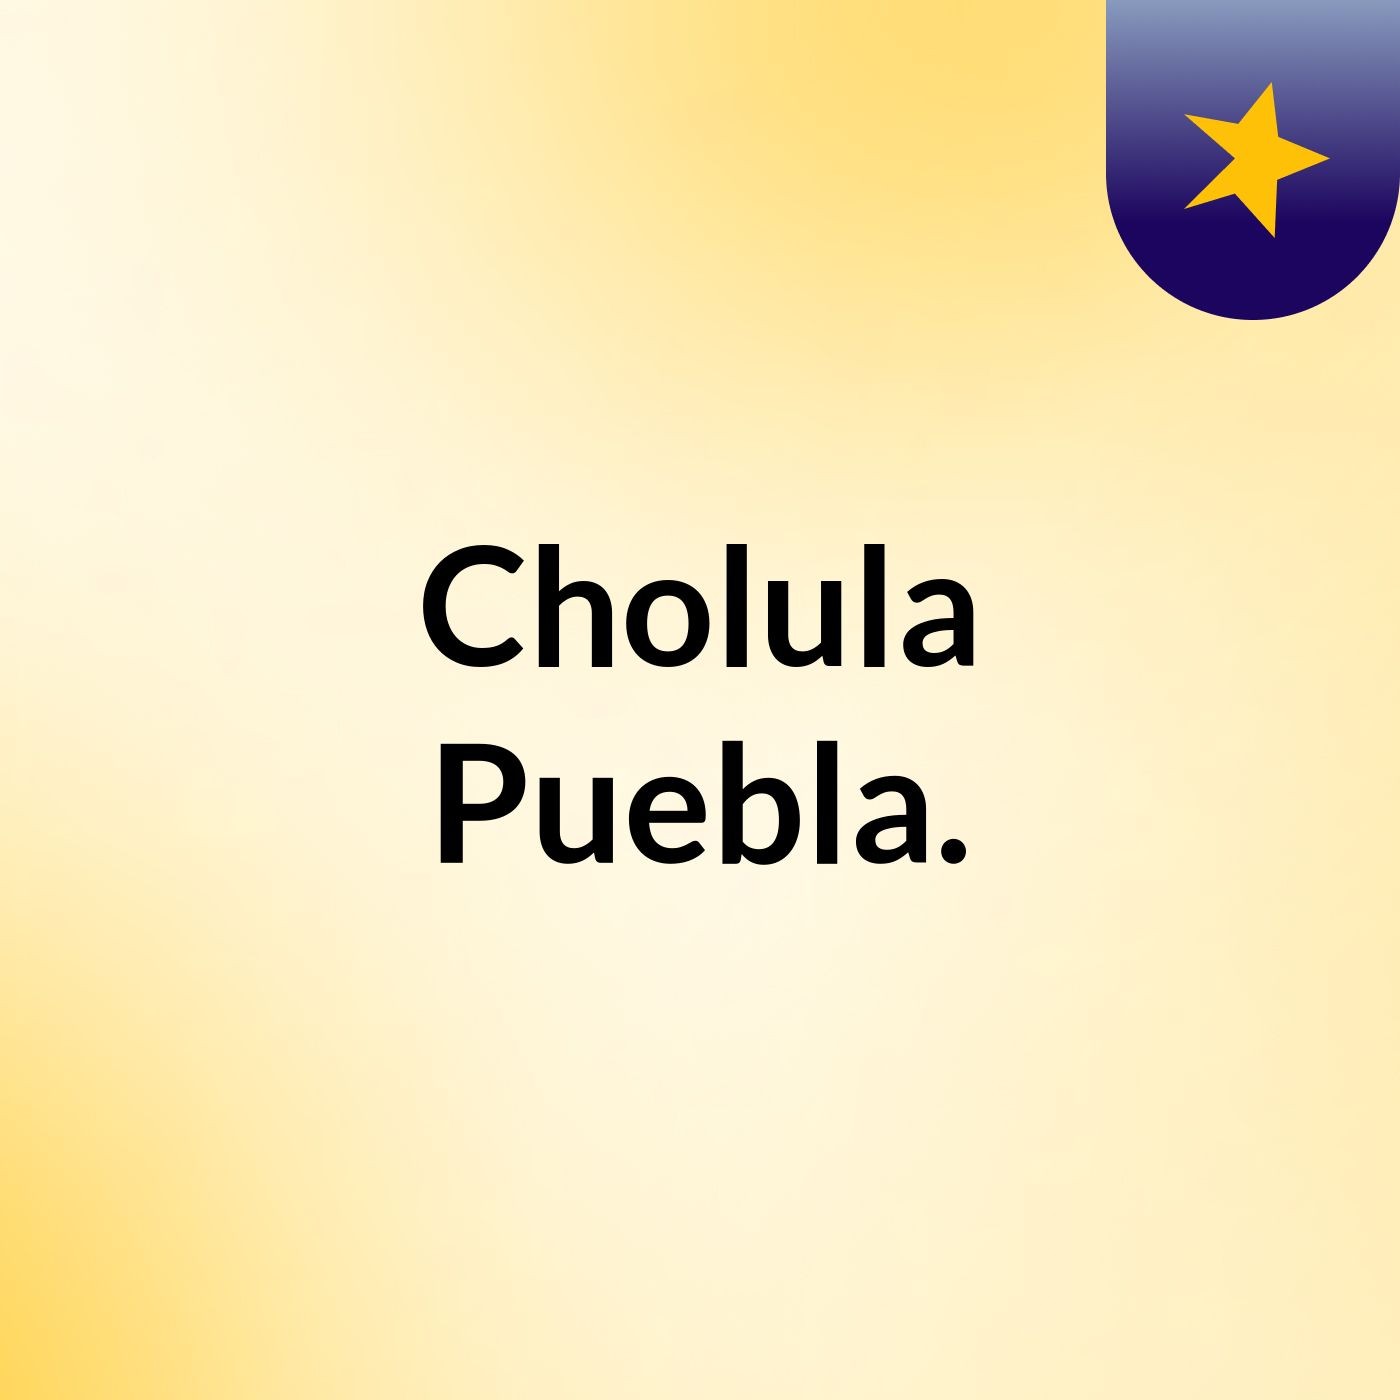 Cholula, Puebla.